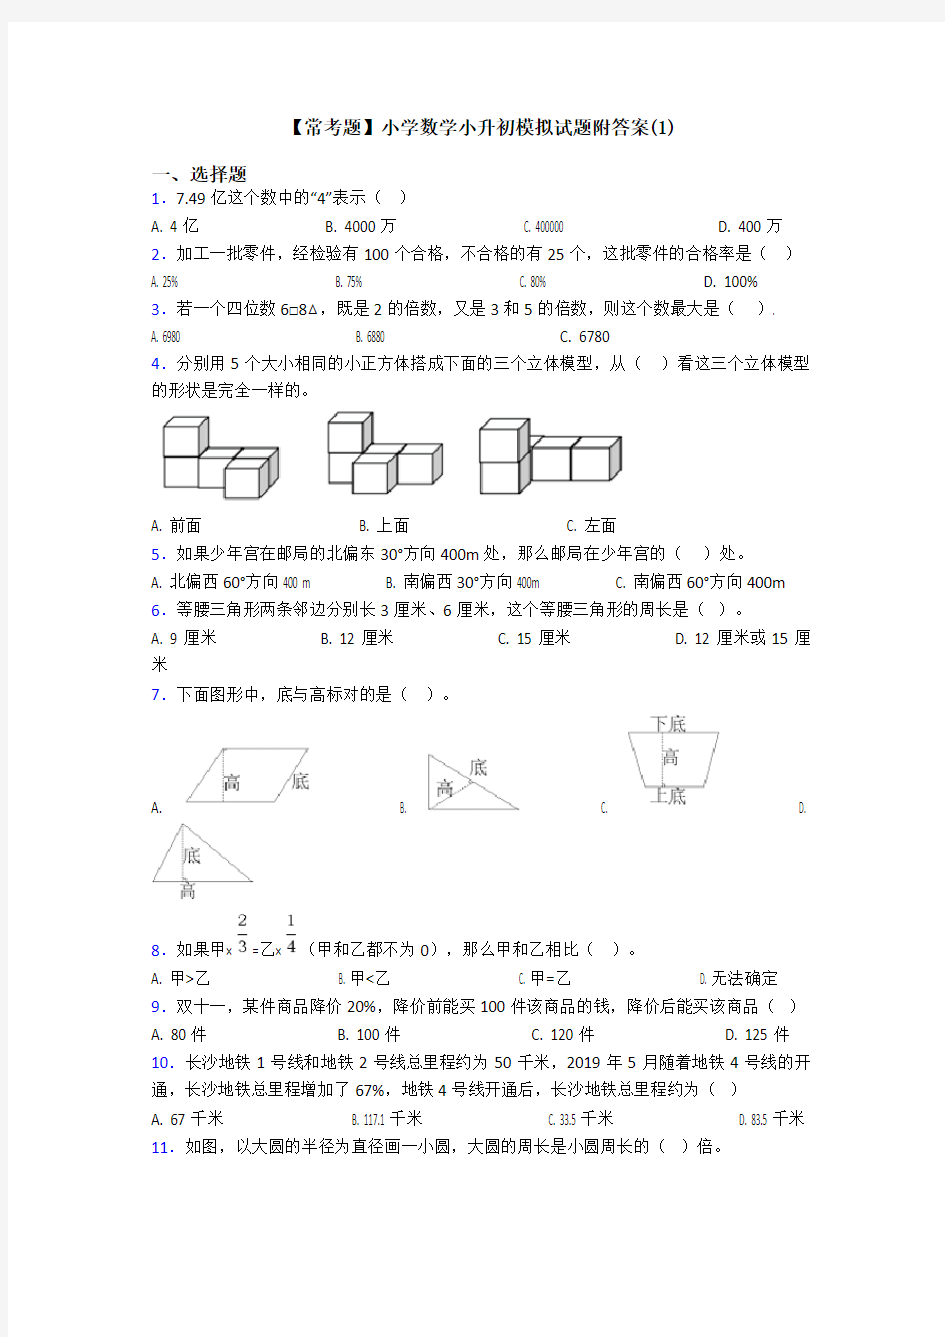 【常考题】小学数学小升初模拟试题附答案(1)